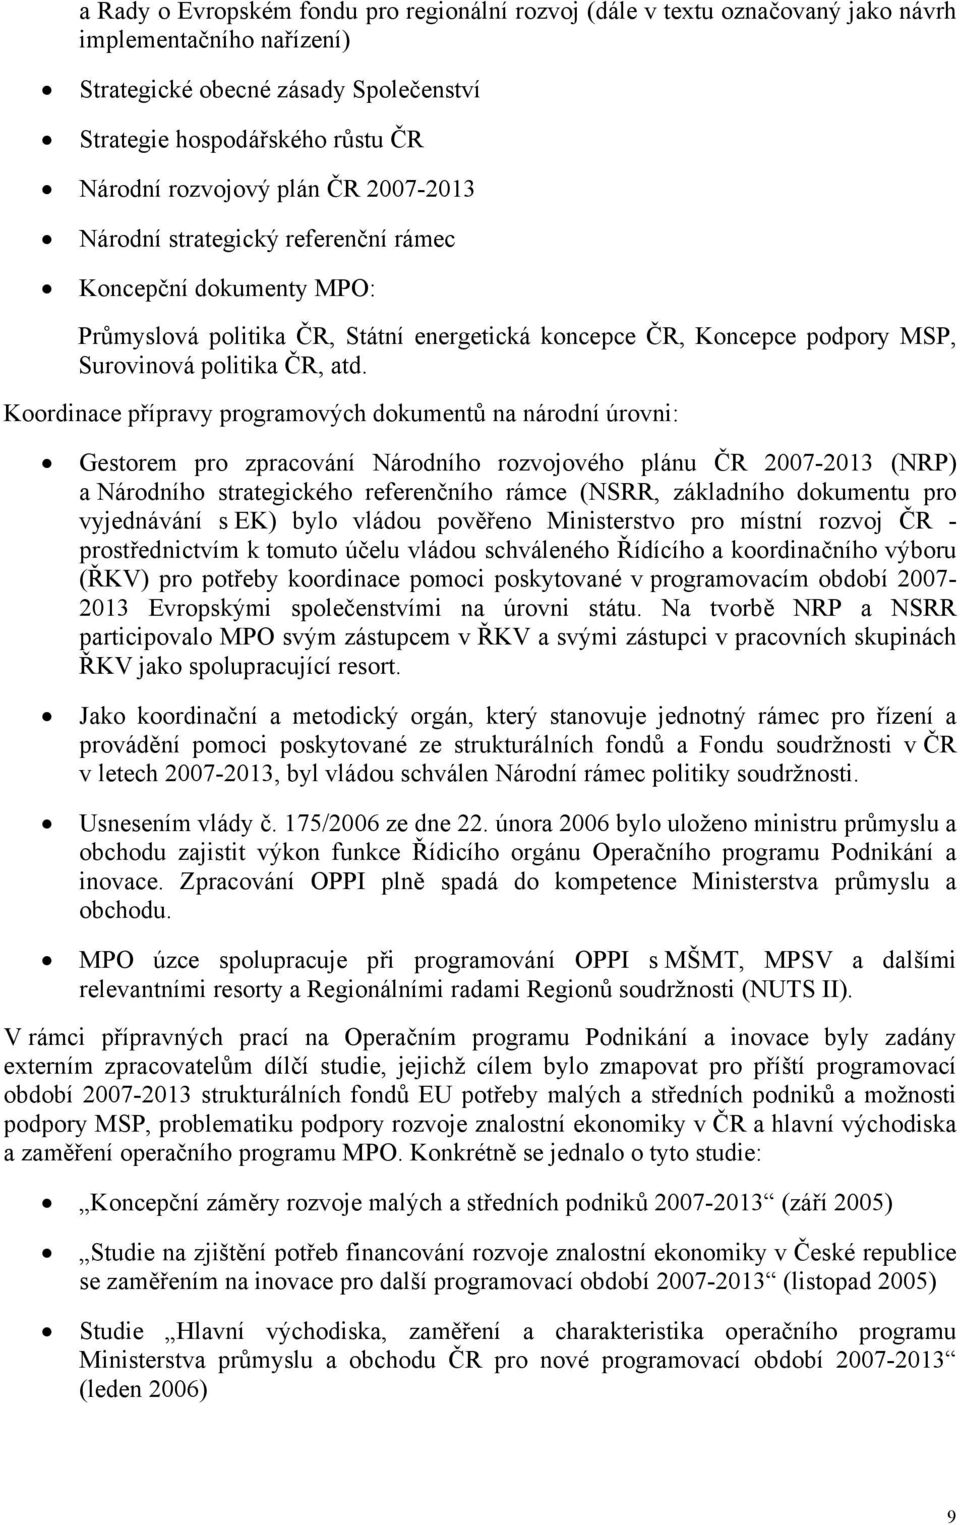 Koordinace přípravy programových dokumentů na národní úrovni: Gestorem pro zpracování Národního rozvojového plánu ČR 2007-2013 (NRP) a Národního strategického referenčního rámce (NSRR, základního